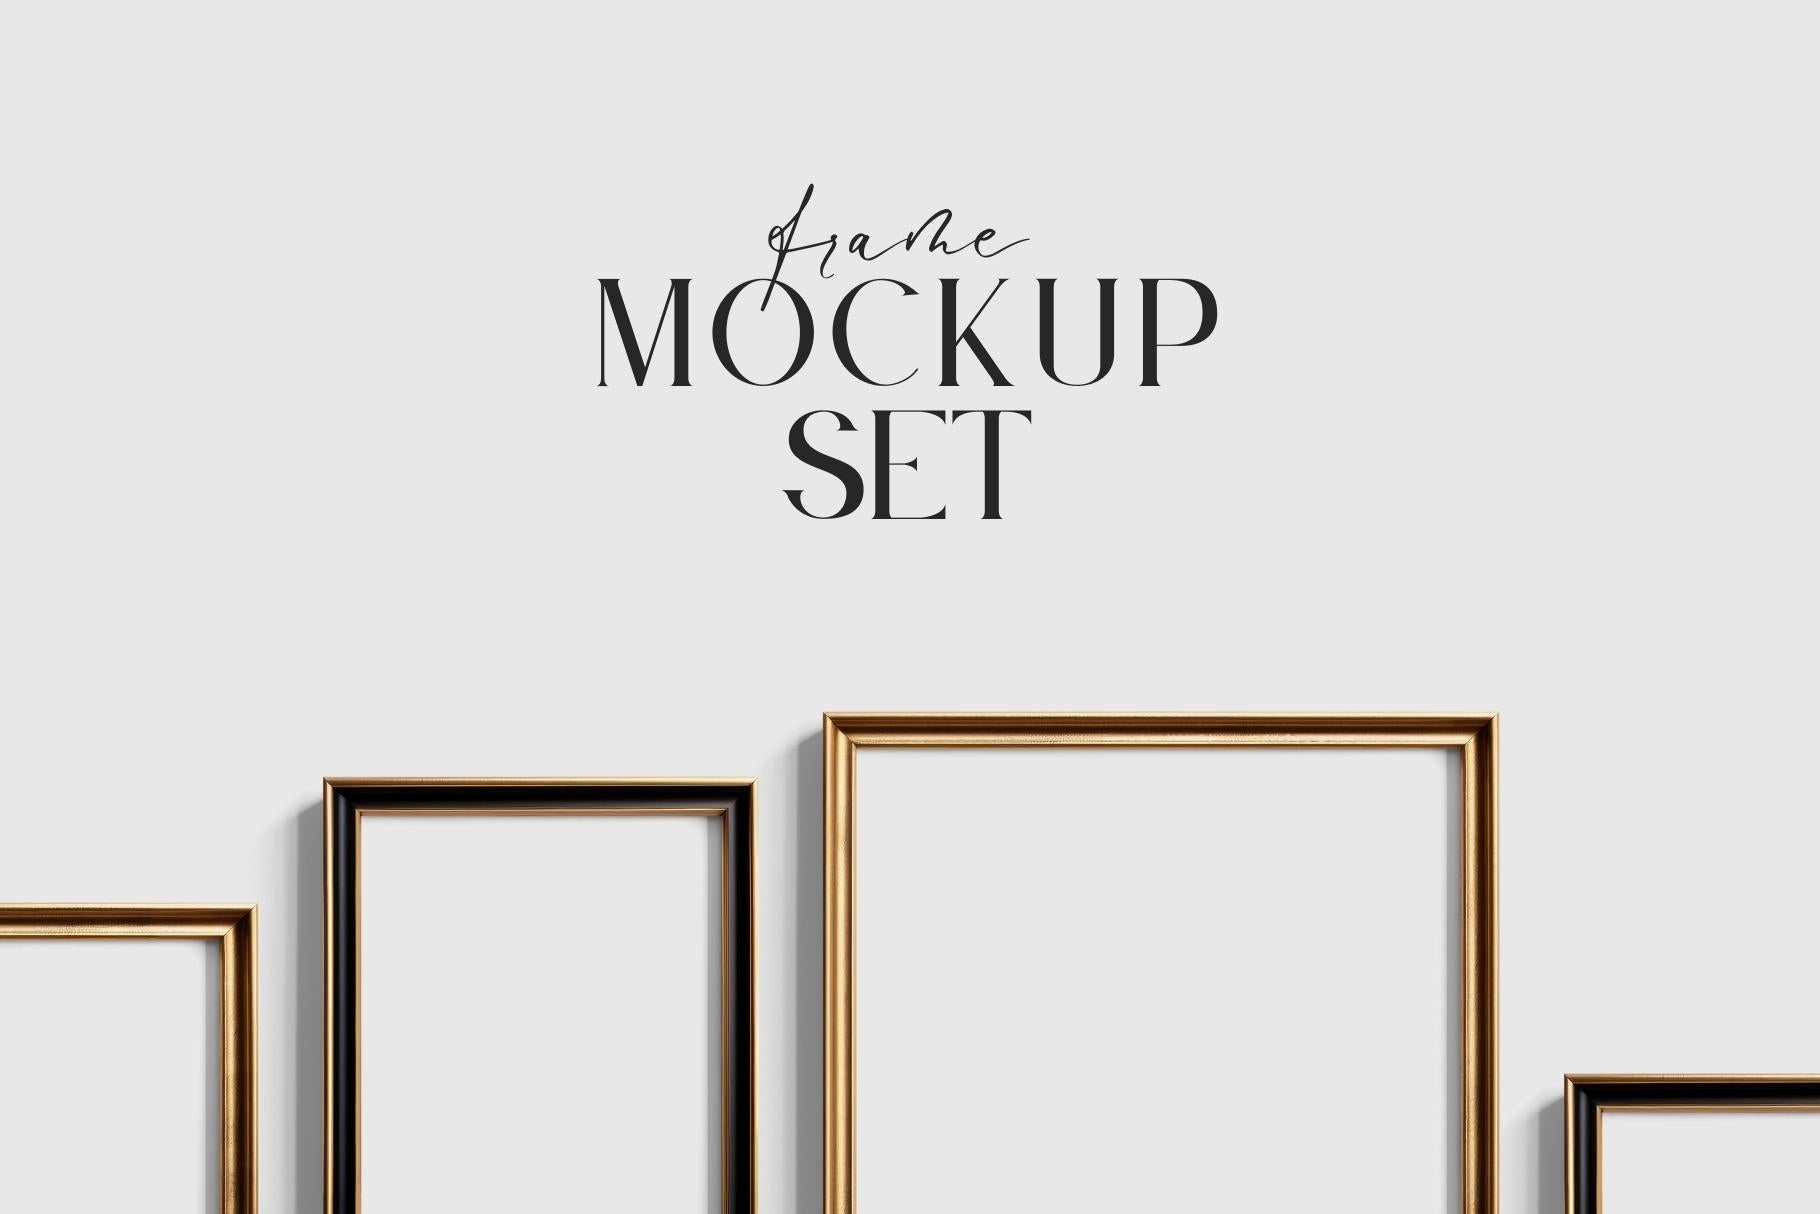 Gallery Wall Mockup, Set of 8 Frames, Frame Mockup, Black